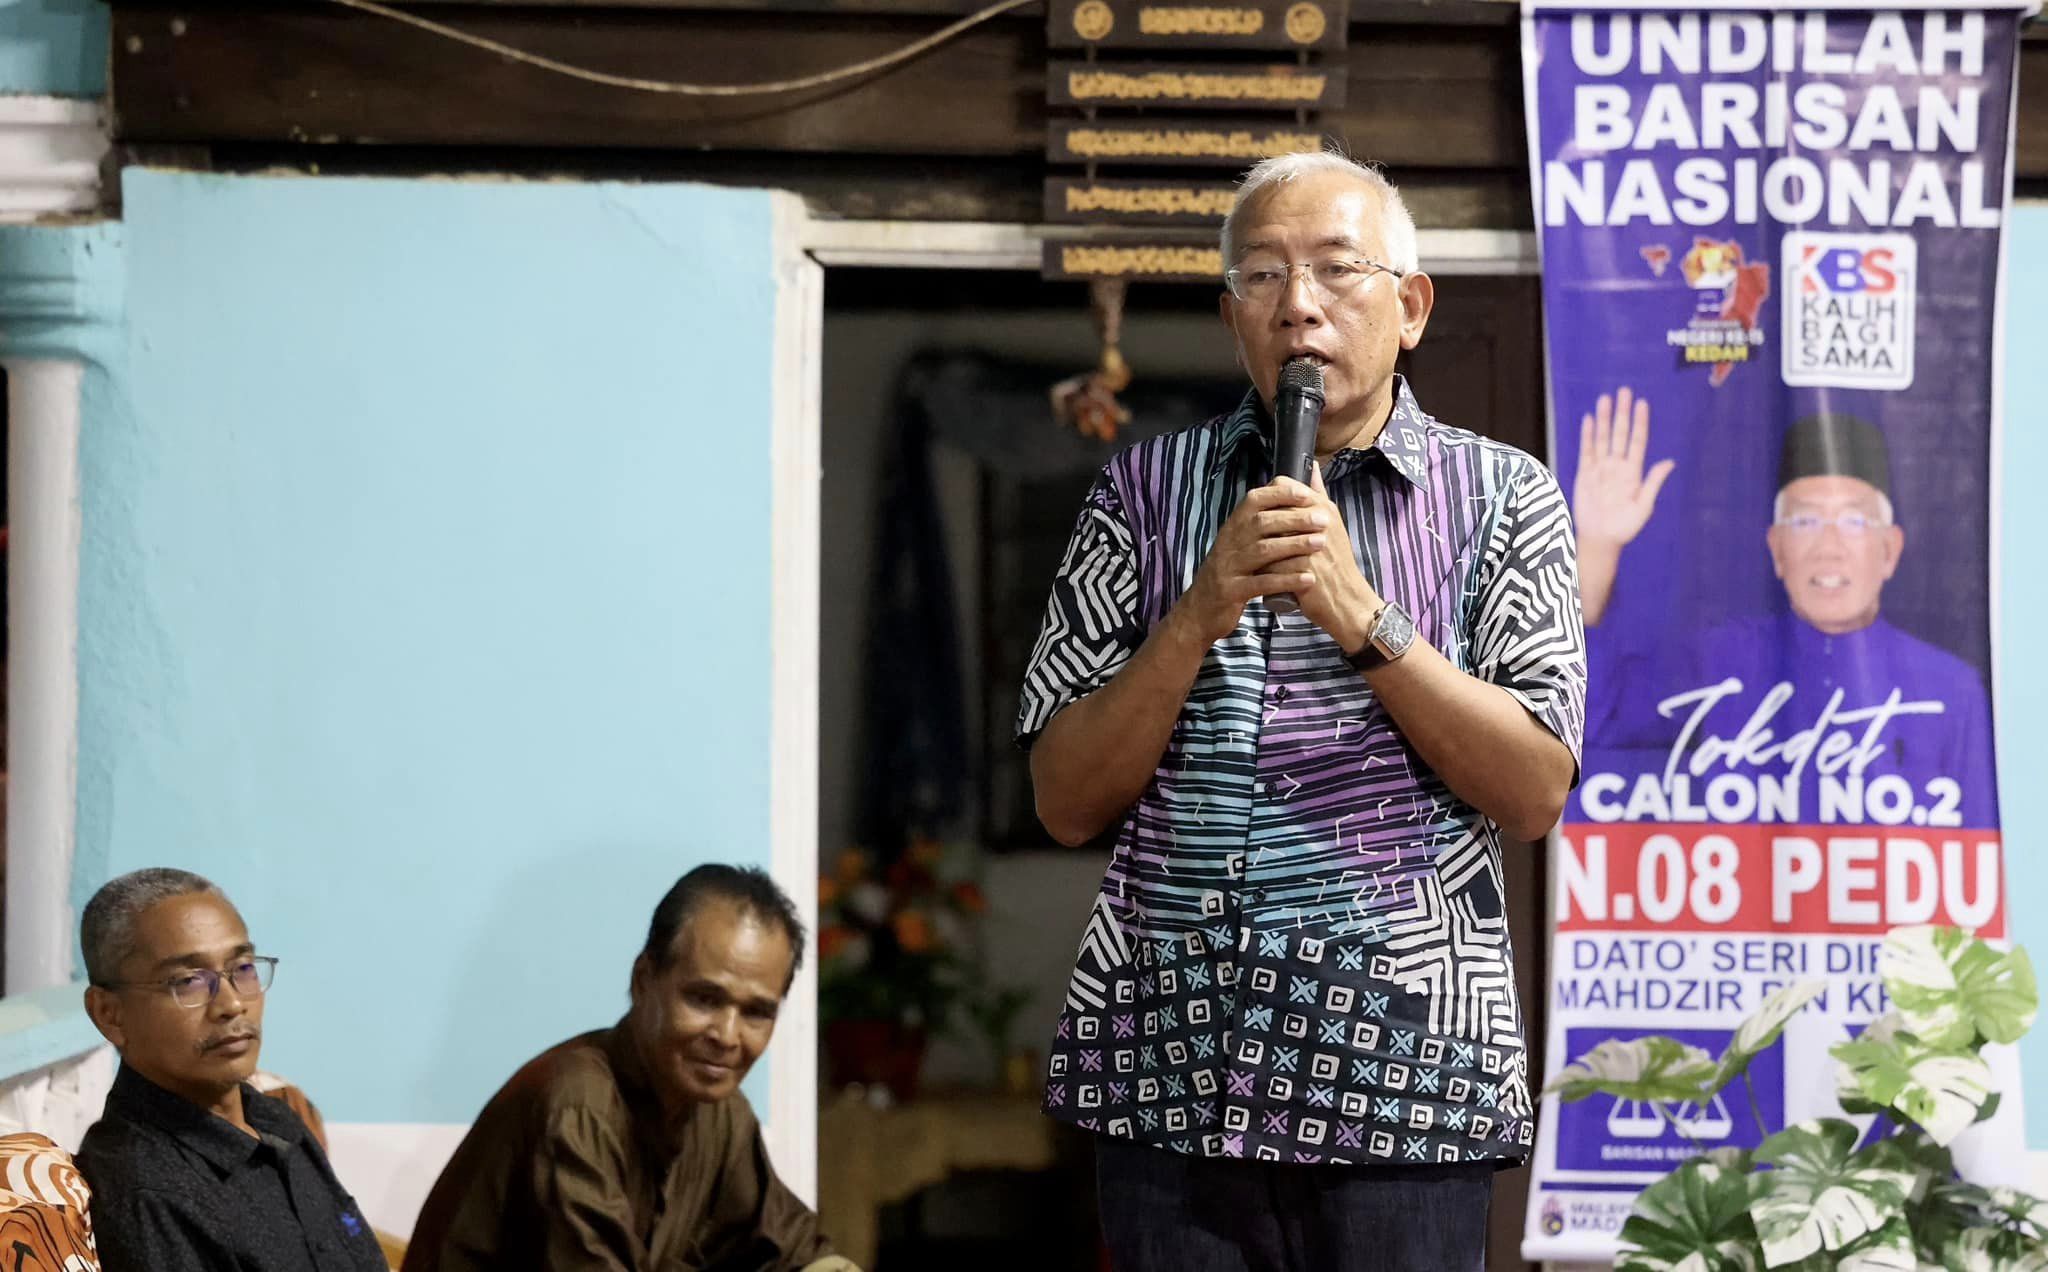 Manifesto Kedah Madani realistik, bukan janji bulan bintang: Mahdzir